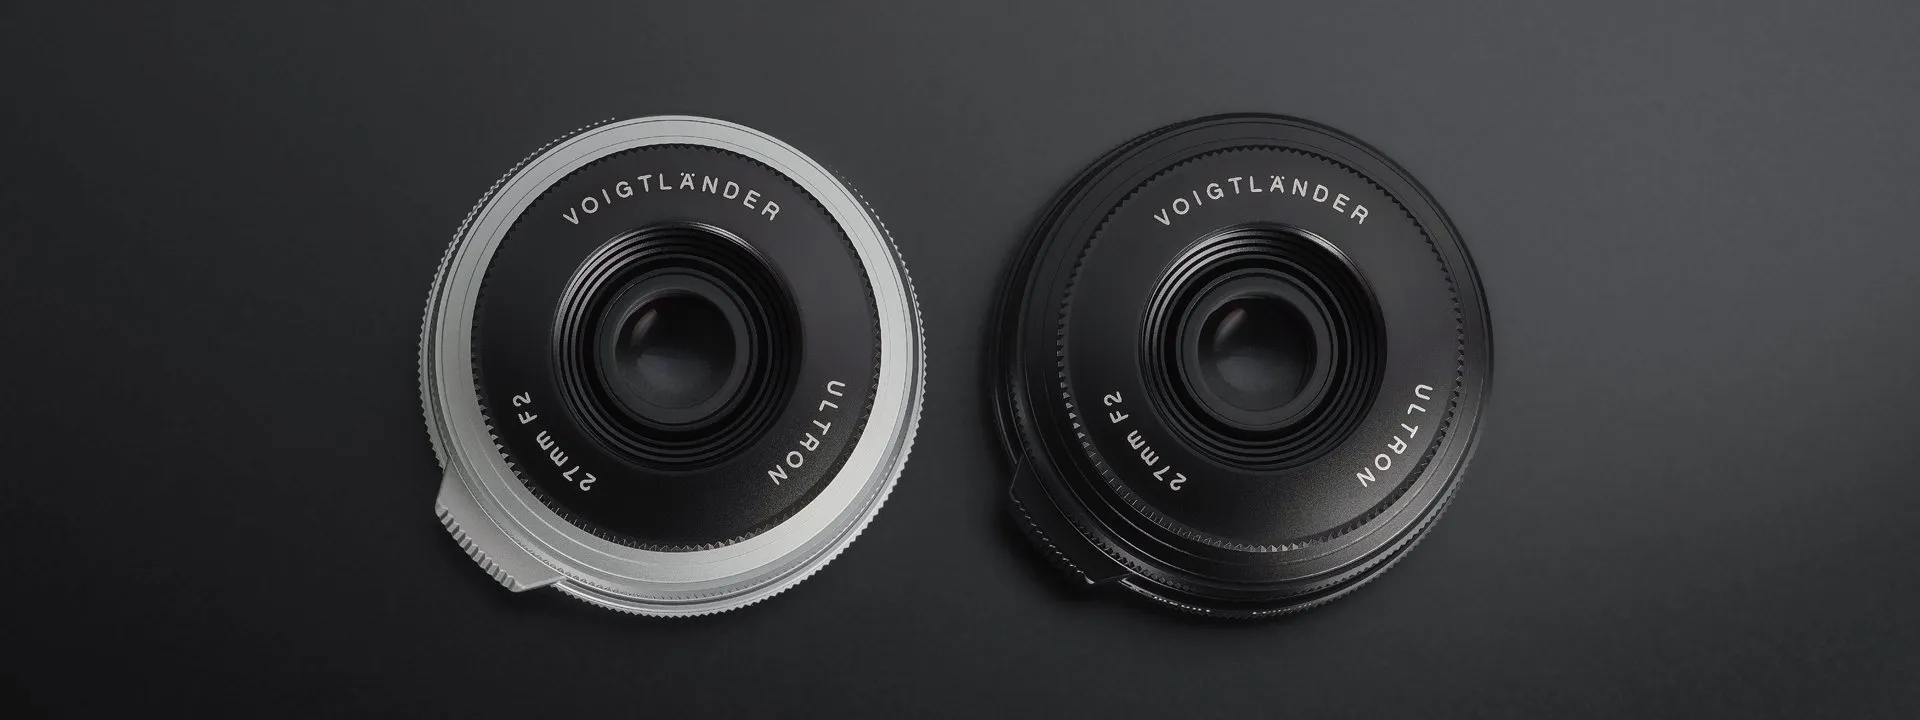 Cosina ra mắt ống kính Voigtlander Ultron 27mm F2 dành riêng cho máy ảnh Fujifilm X